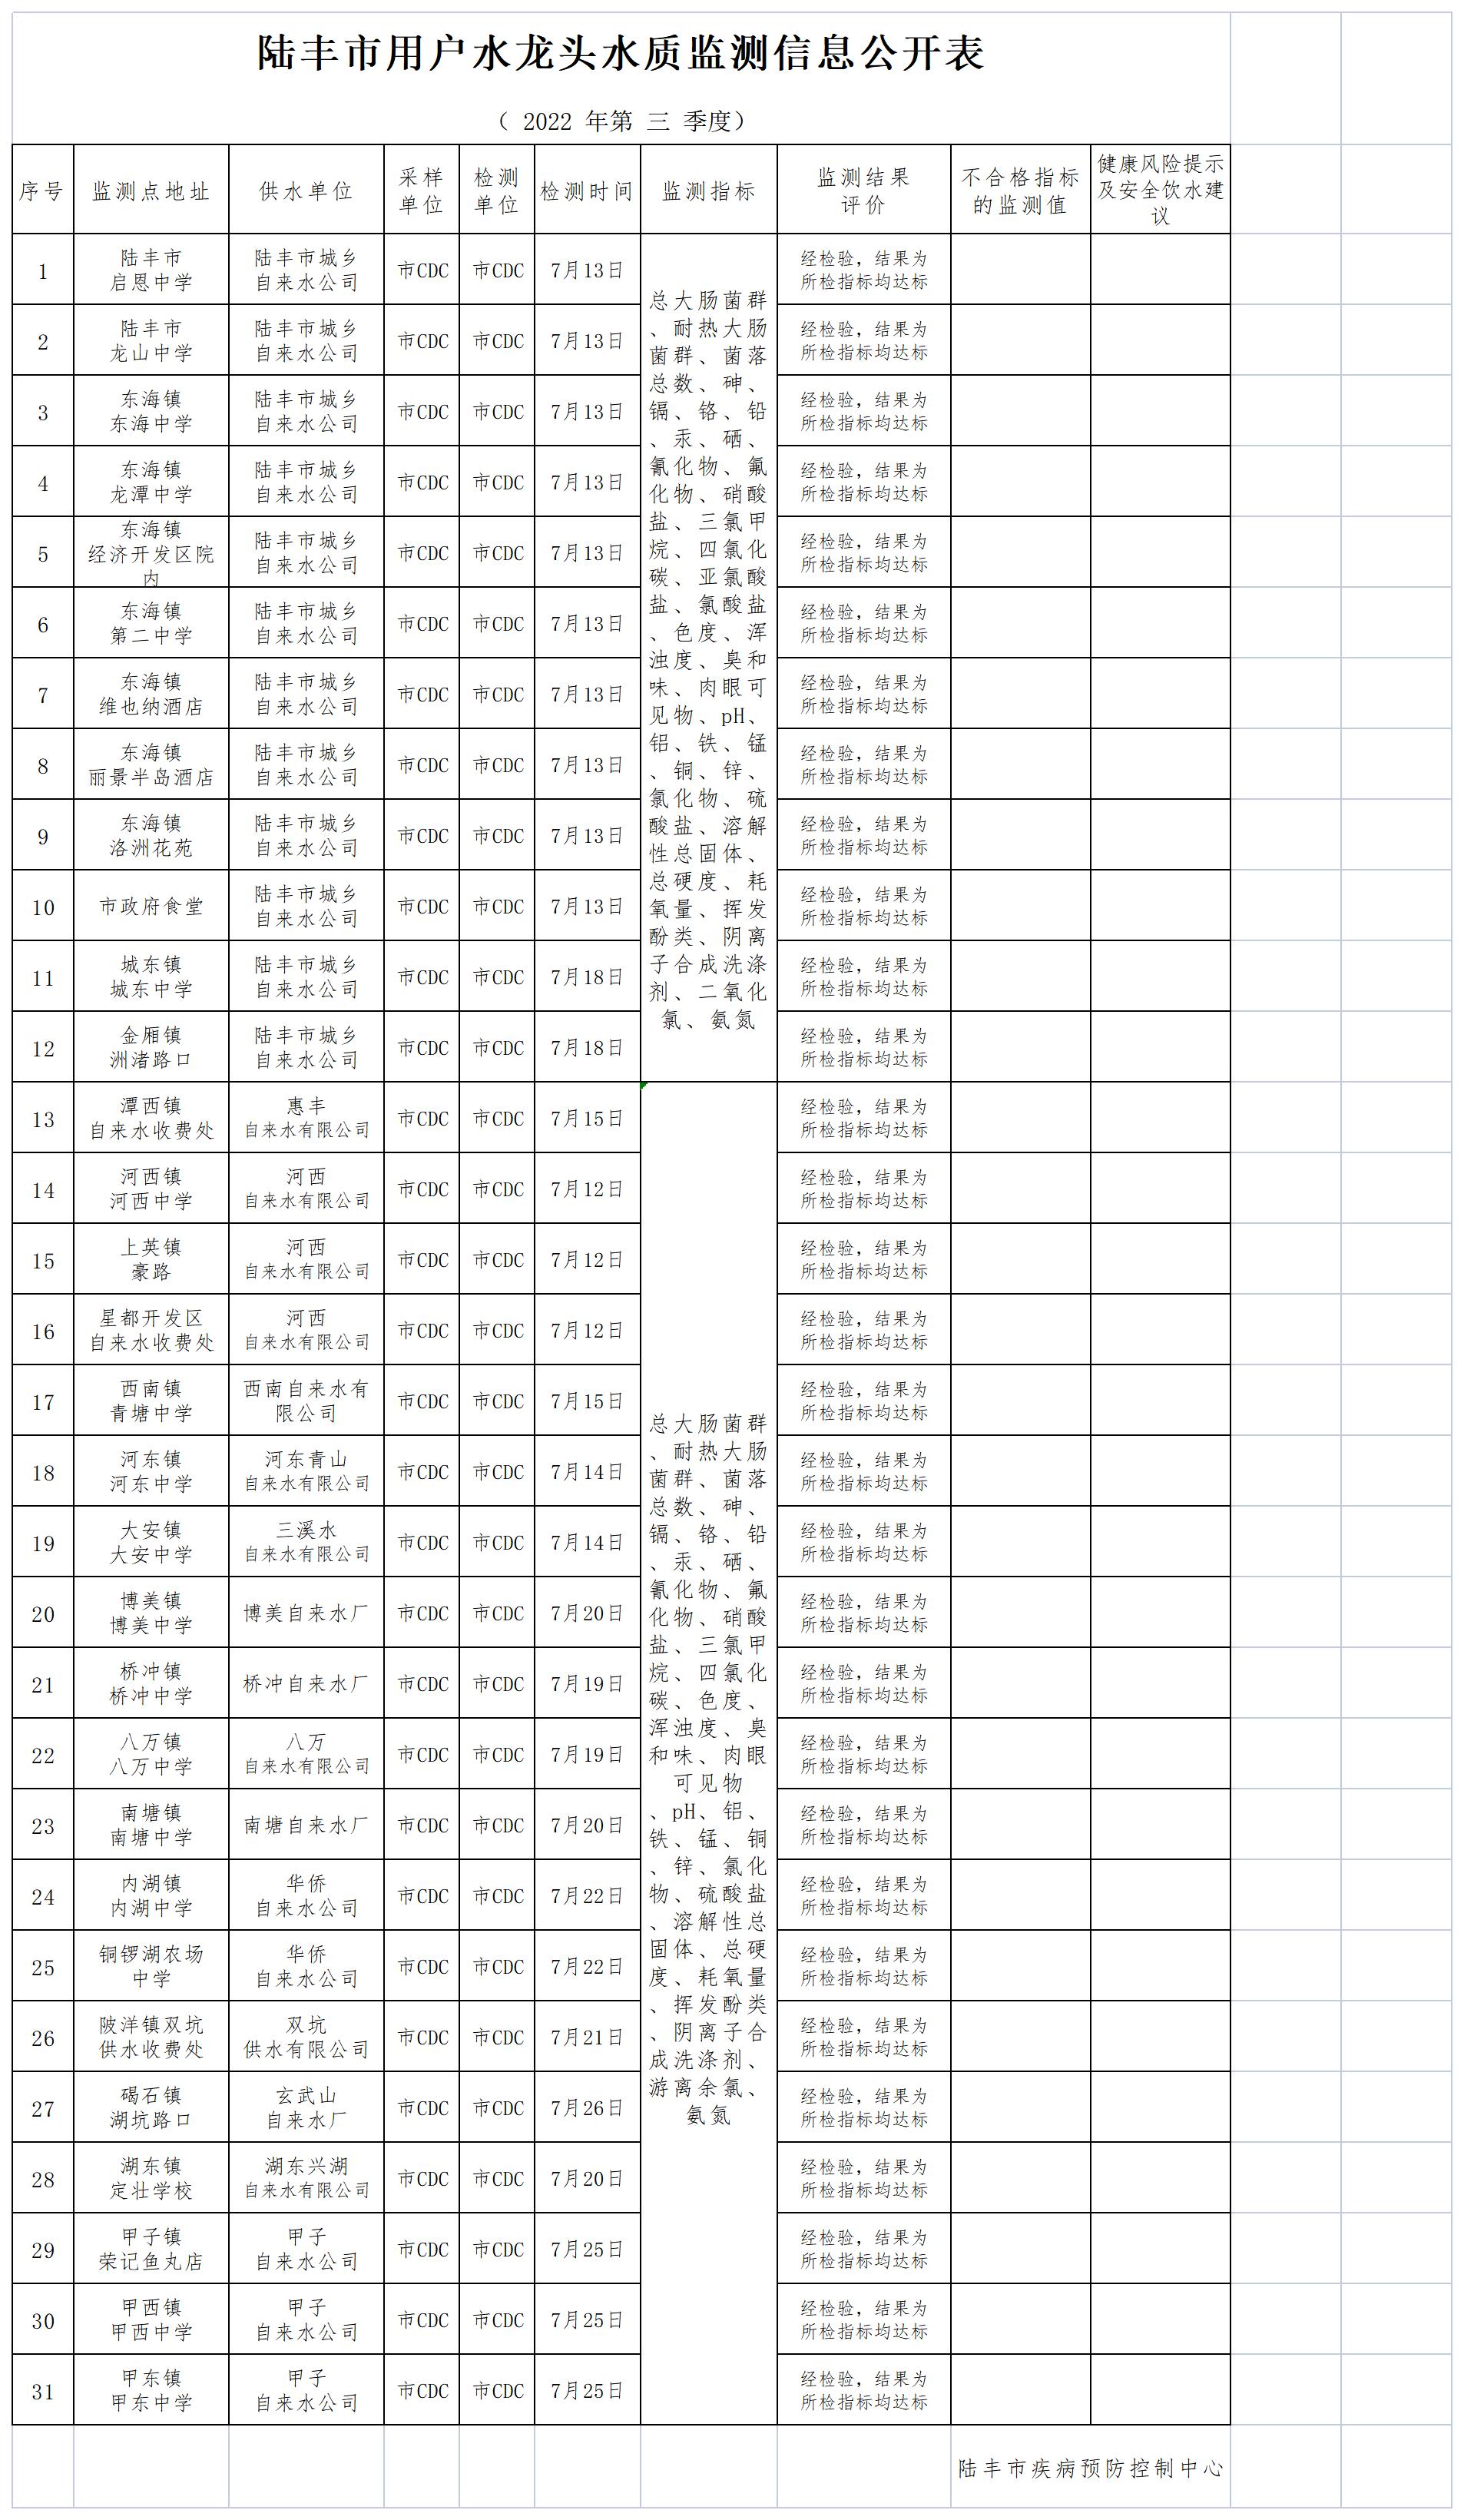 陆丰市用户水龙头水质监测信息公开表2022（第三季度）_Sheet1.jpg